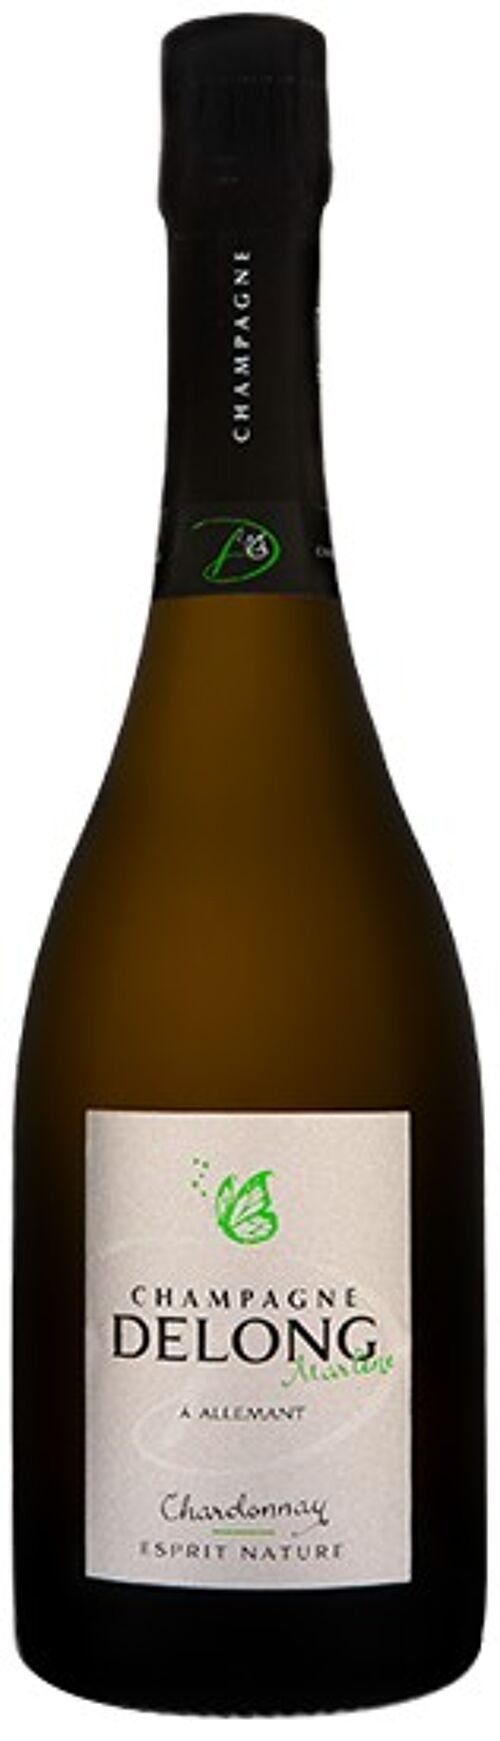 Esprit Nature Chardonnay - Bouteille 75cl - Vendanges 2013